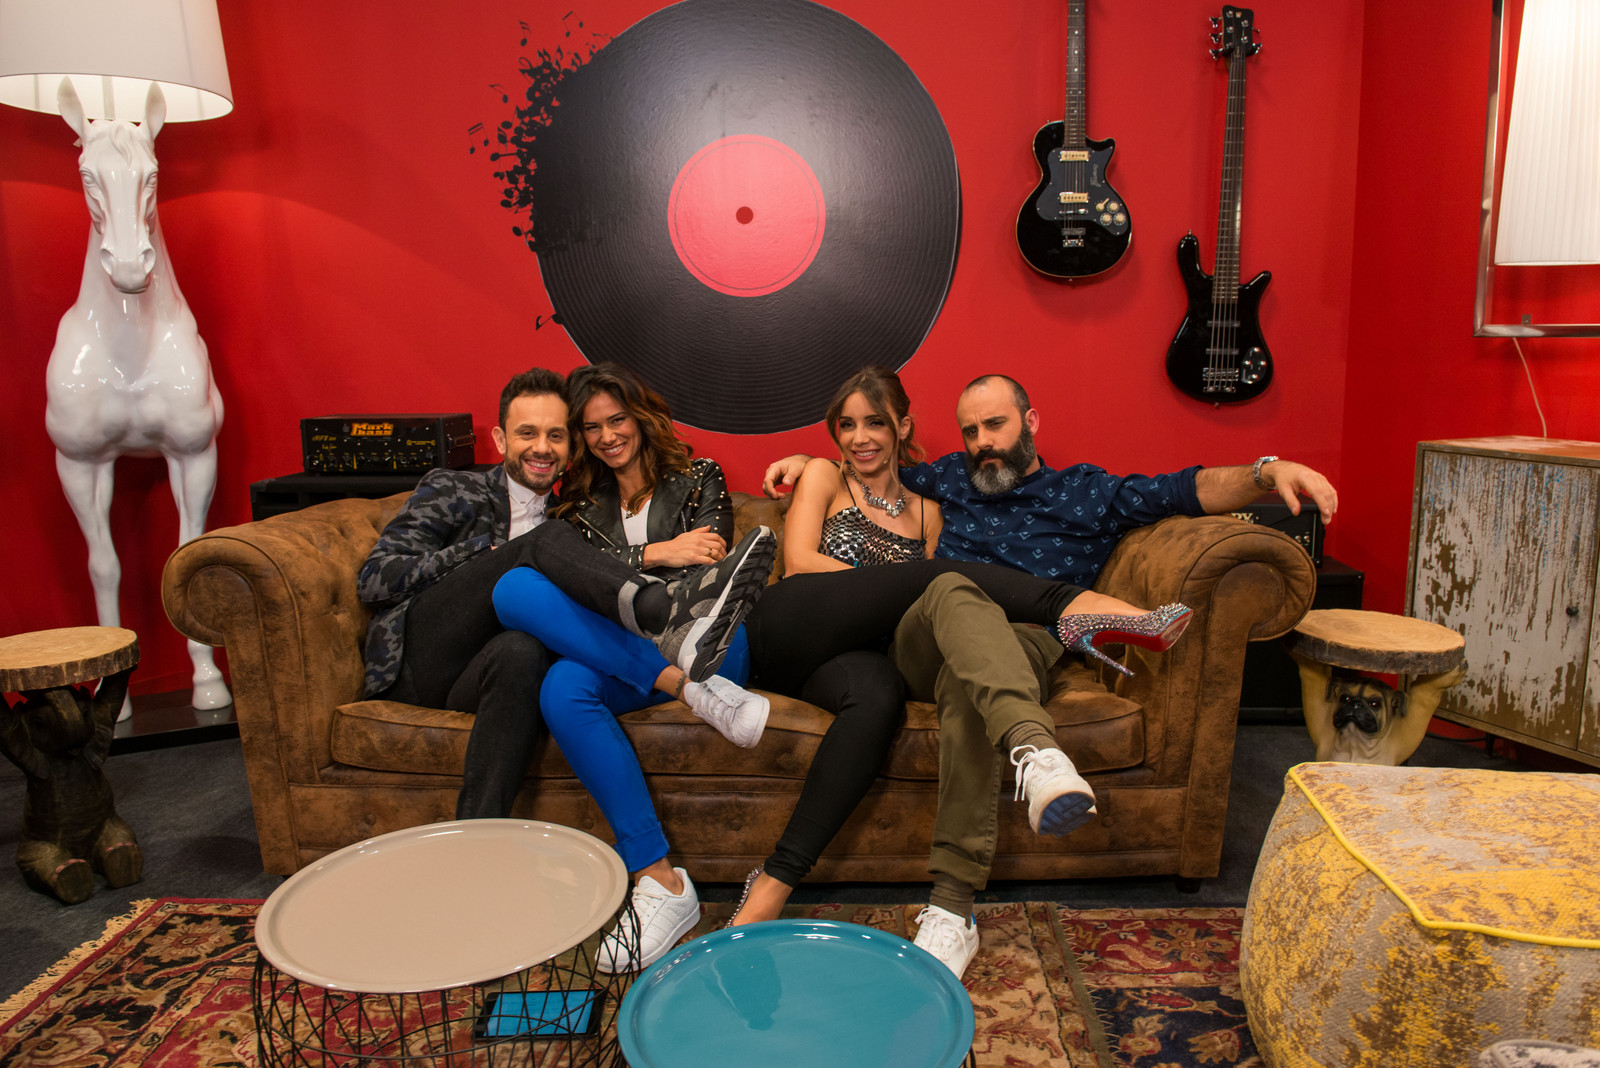 agarra «Agarra a Música» vence reality show da TVI nas audiências